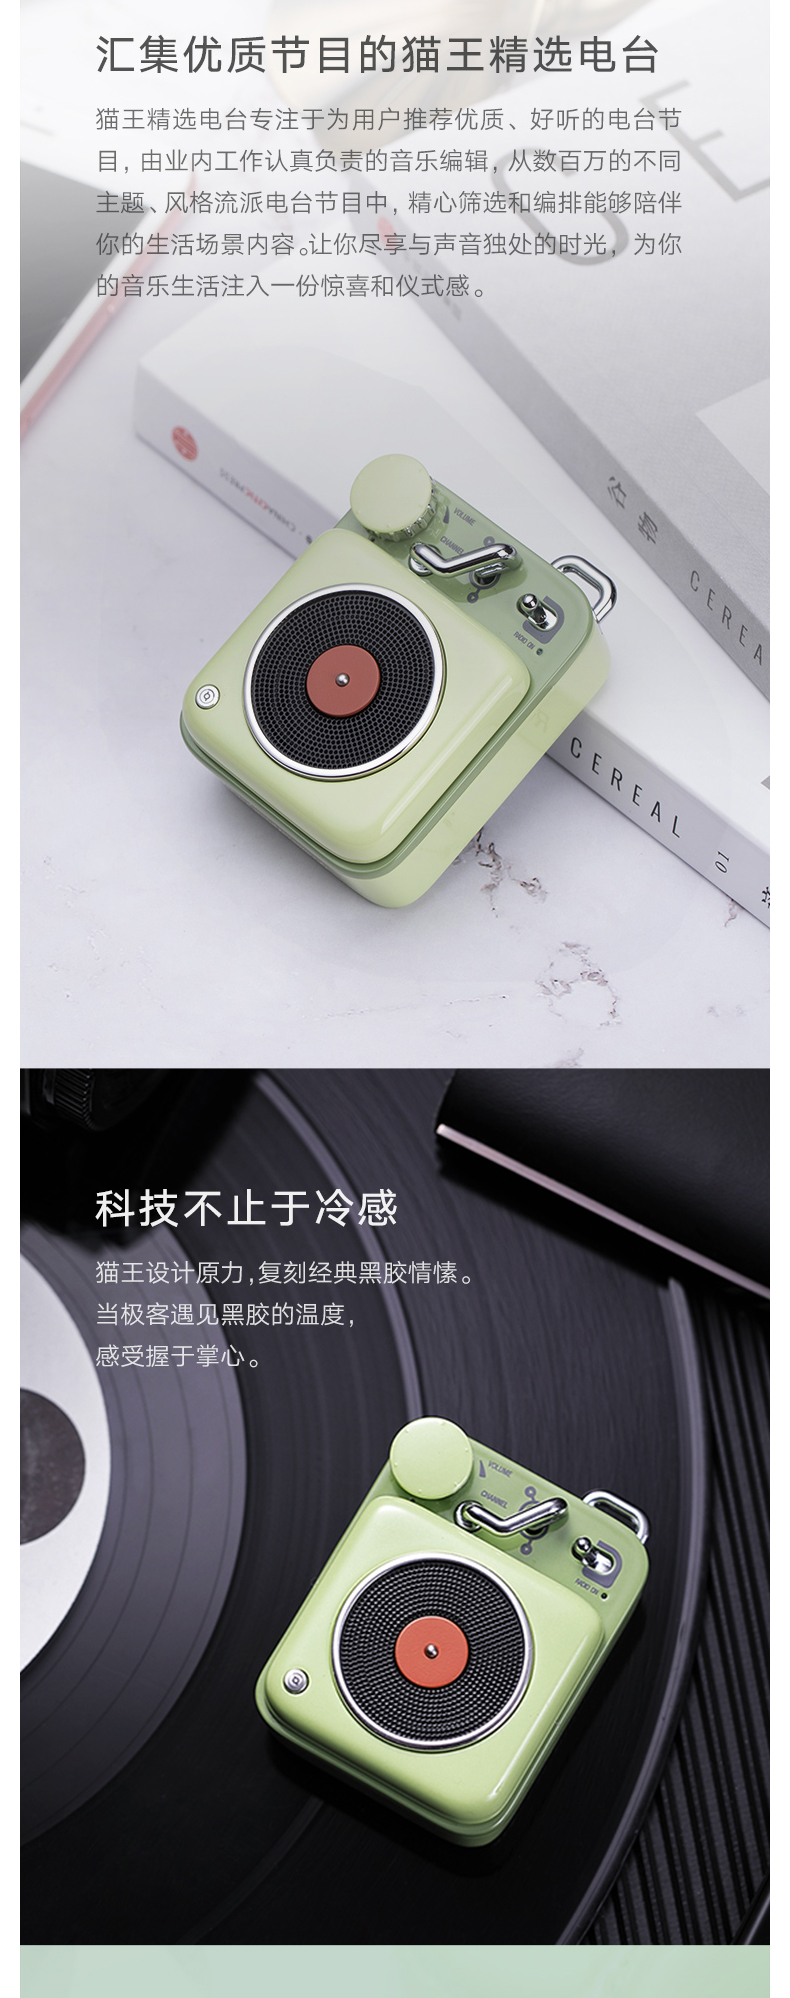 猫王 收音机 便携式复古蓝牙音箱 MW-P1 (原野绿)